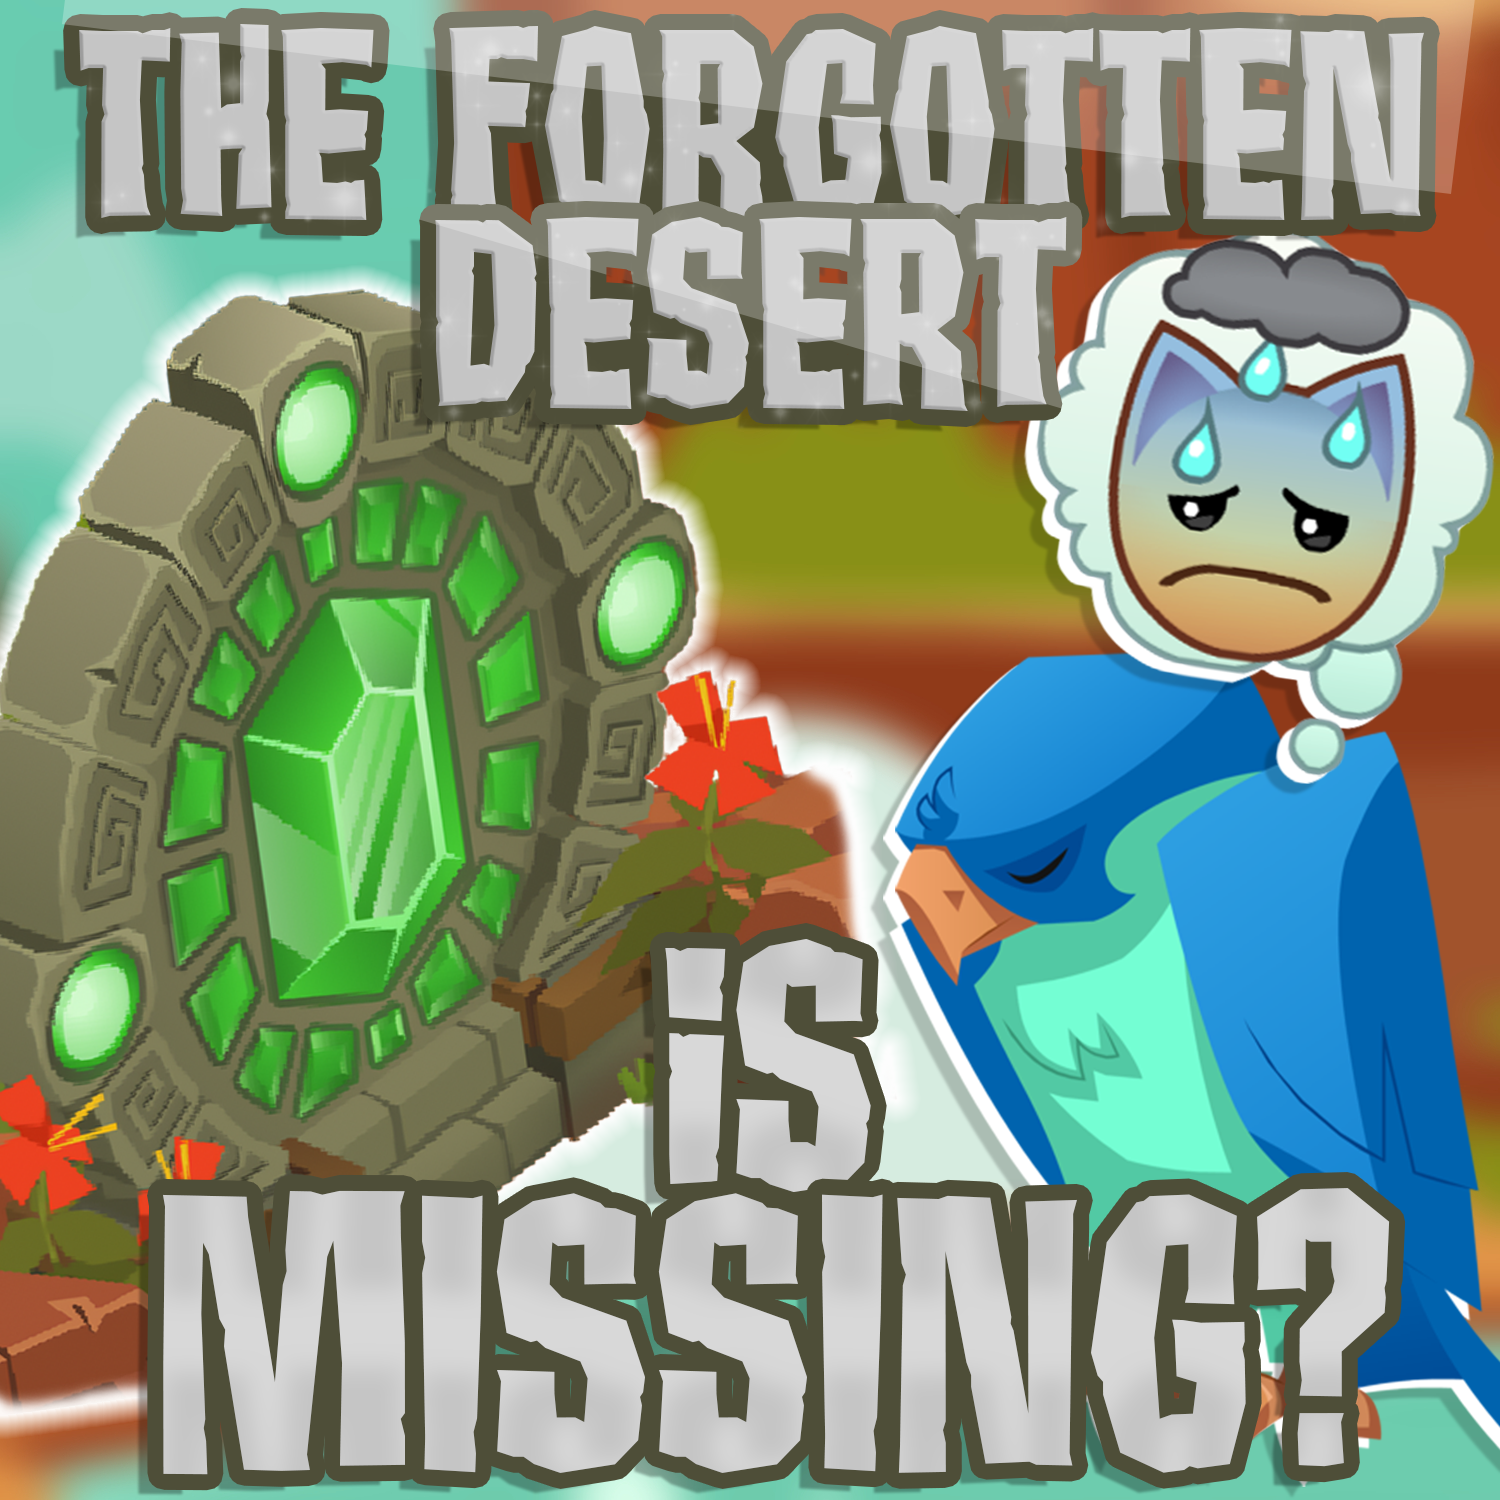 The Forgotten Desert is Missing?